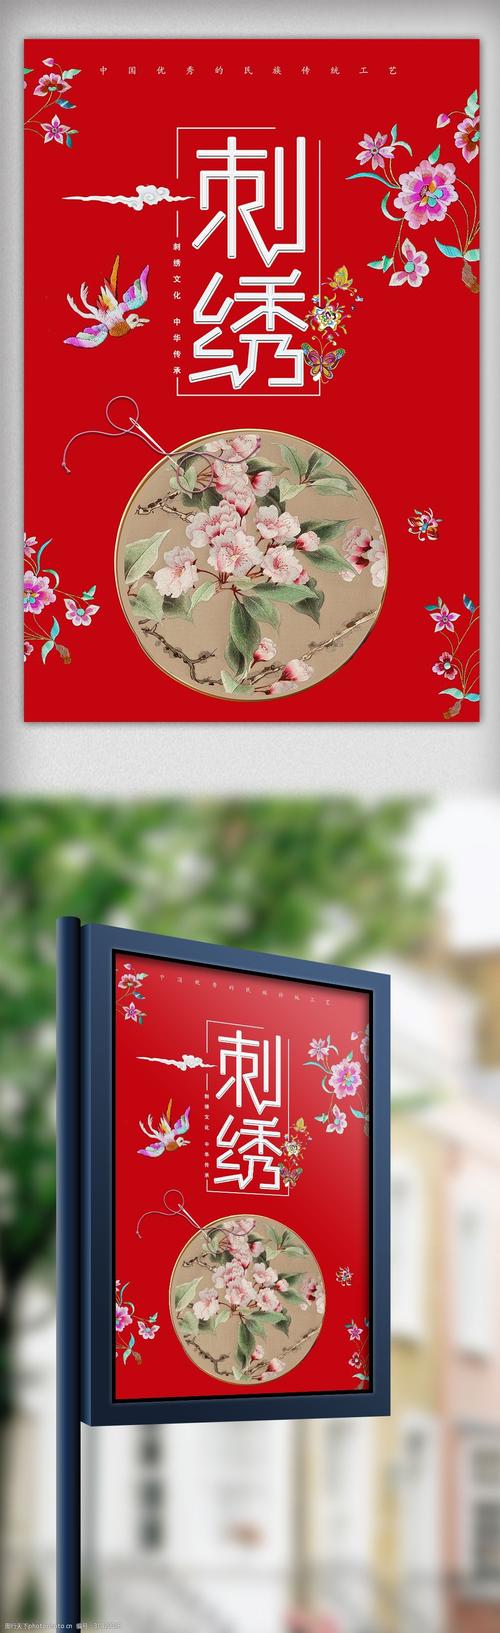 刺绣中国优秀的民族传统工艺海报 美女 创意 宣传 设计 广告设计 中国